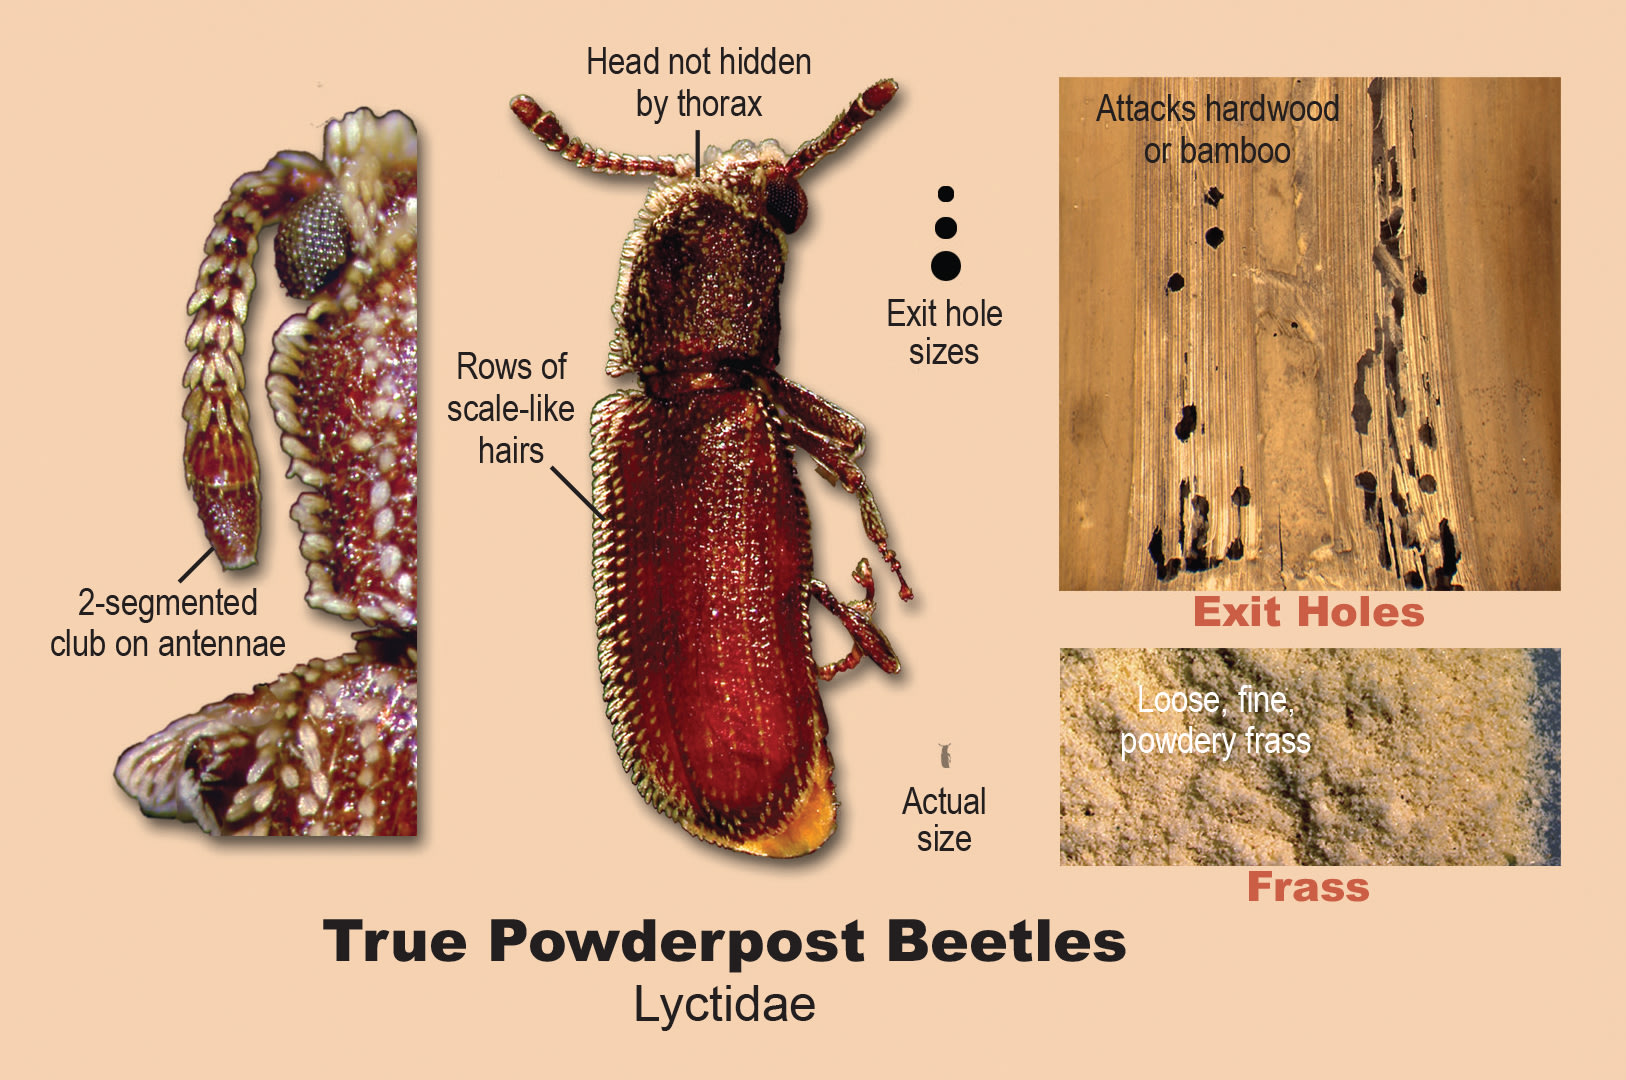 True powderpost beetles.